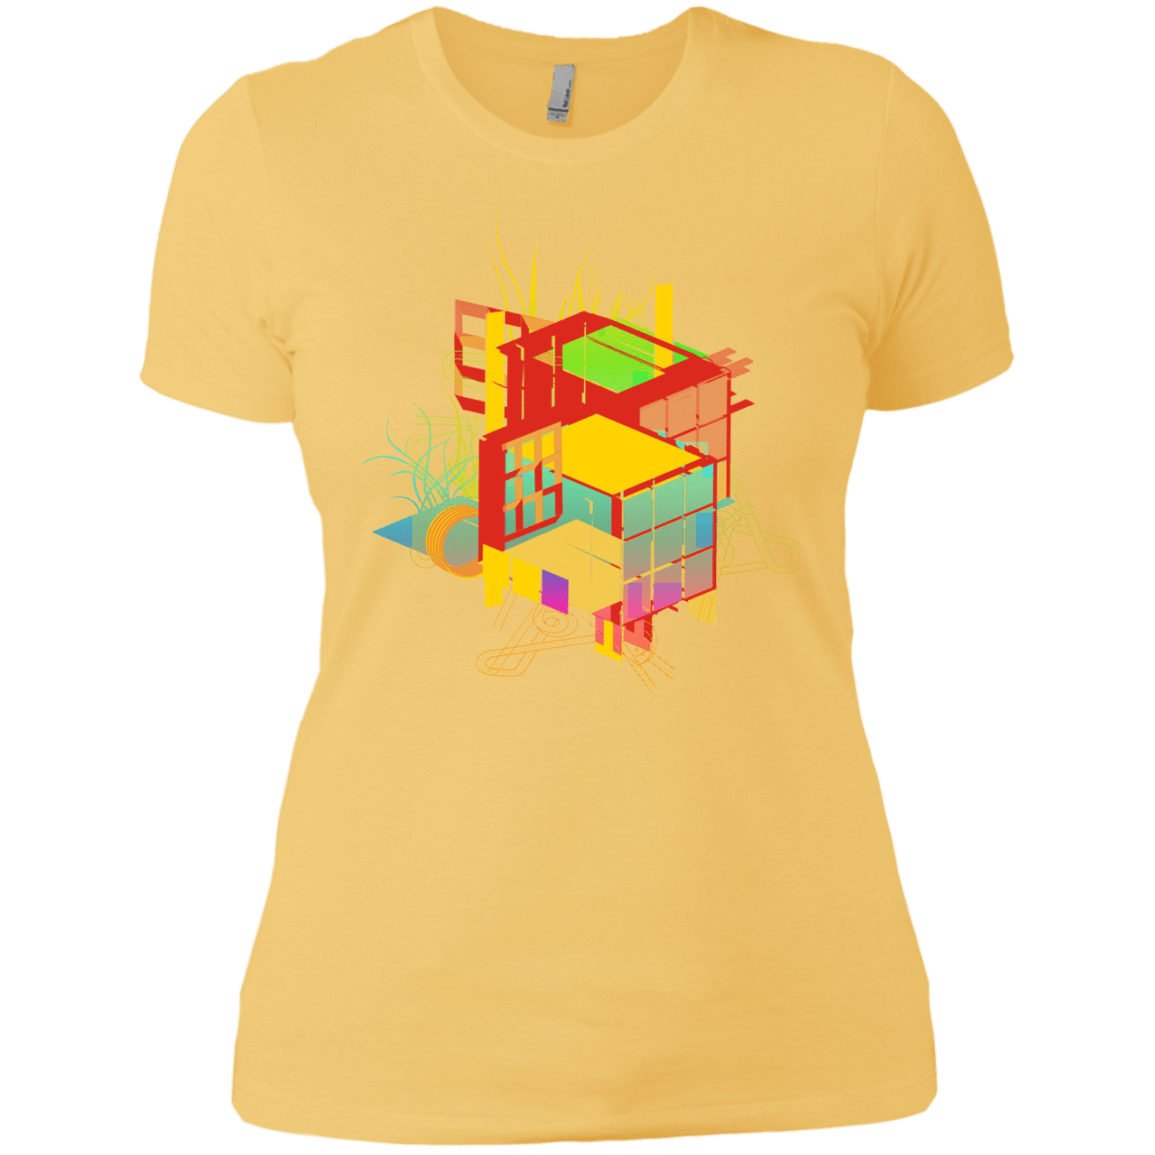 T-Shirts Banana Cream/ / X-Small Rubik's Building Women's Premium T-Shirt